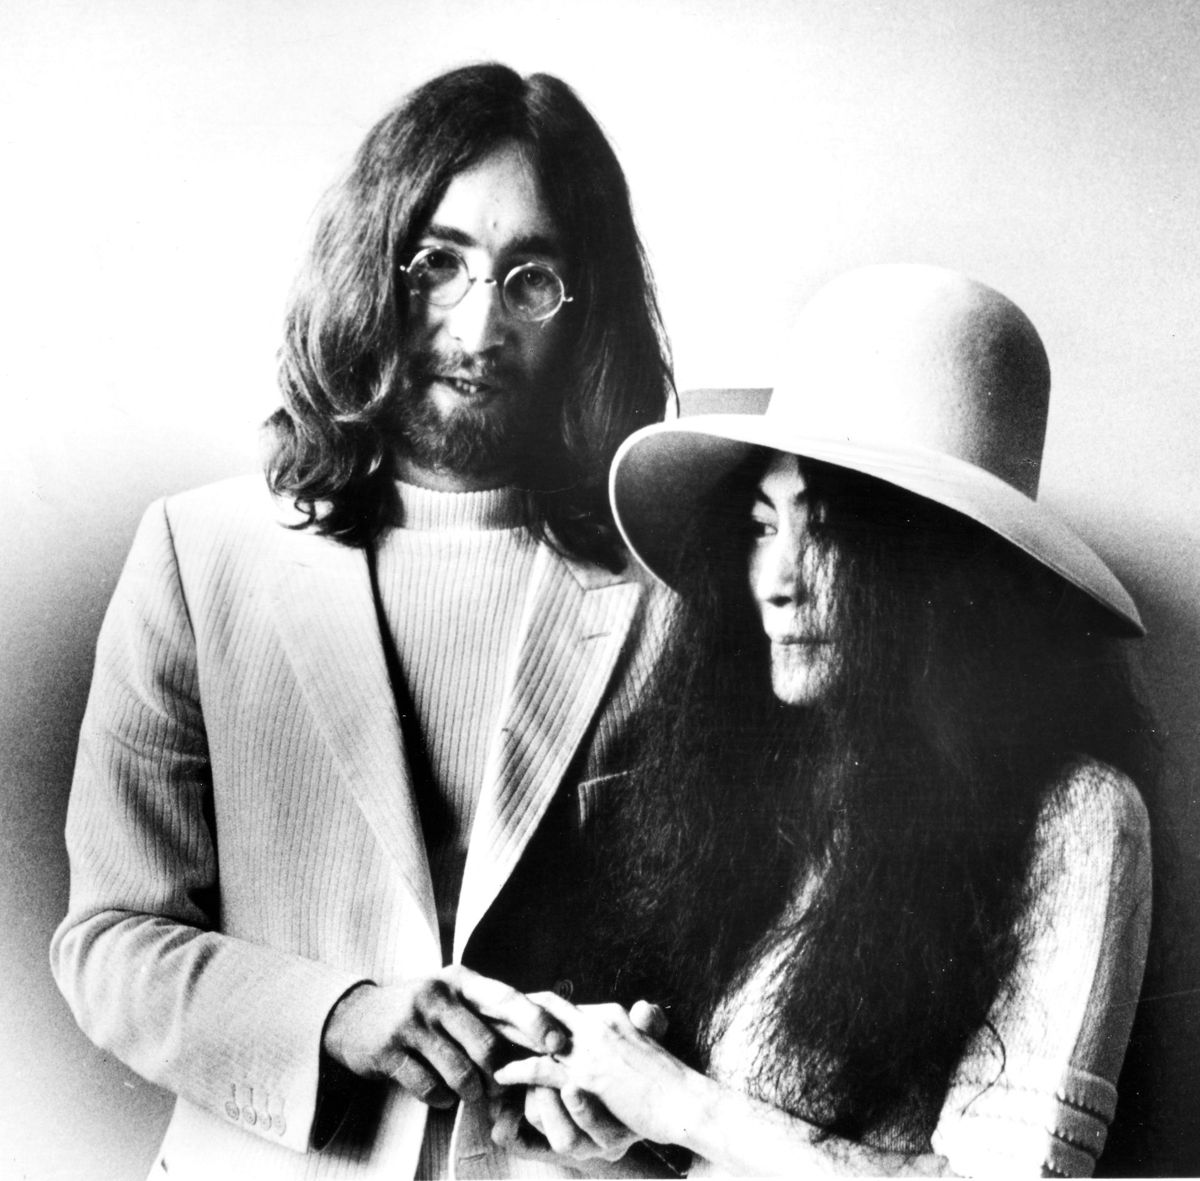 John Lennon blev dræbt i 1980, men for mange er 80'erne synonym med den tidligere Beatles-stjerne. Foto: David Nutter / Photo Trends / Scanpix DAVID NUTTER / Photo Trends